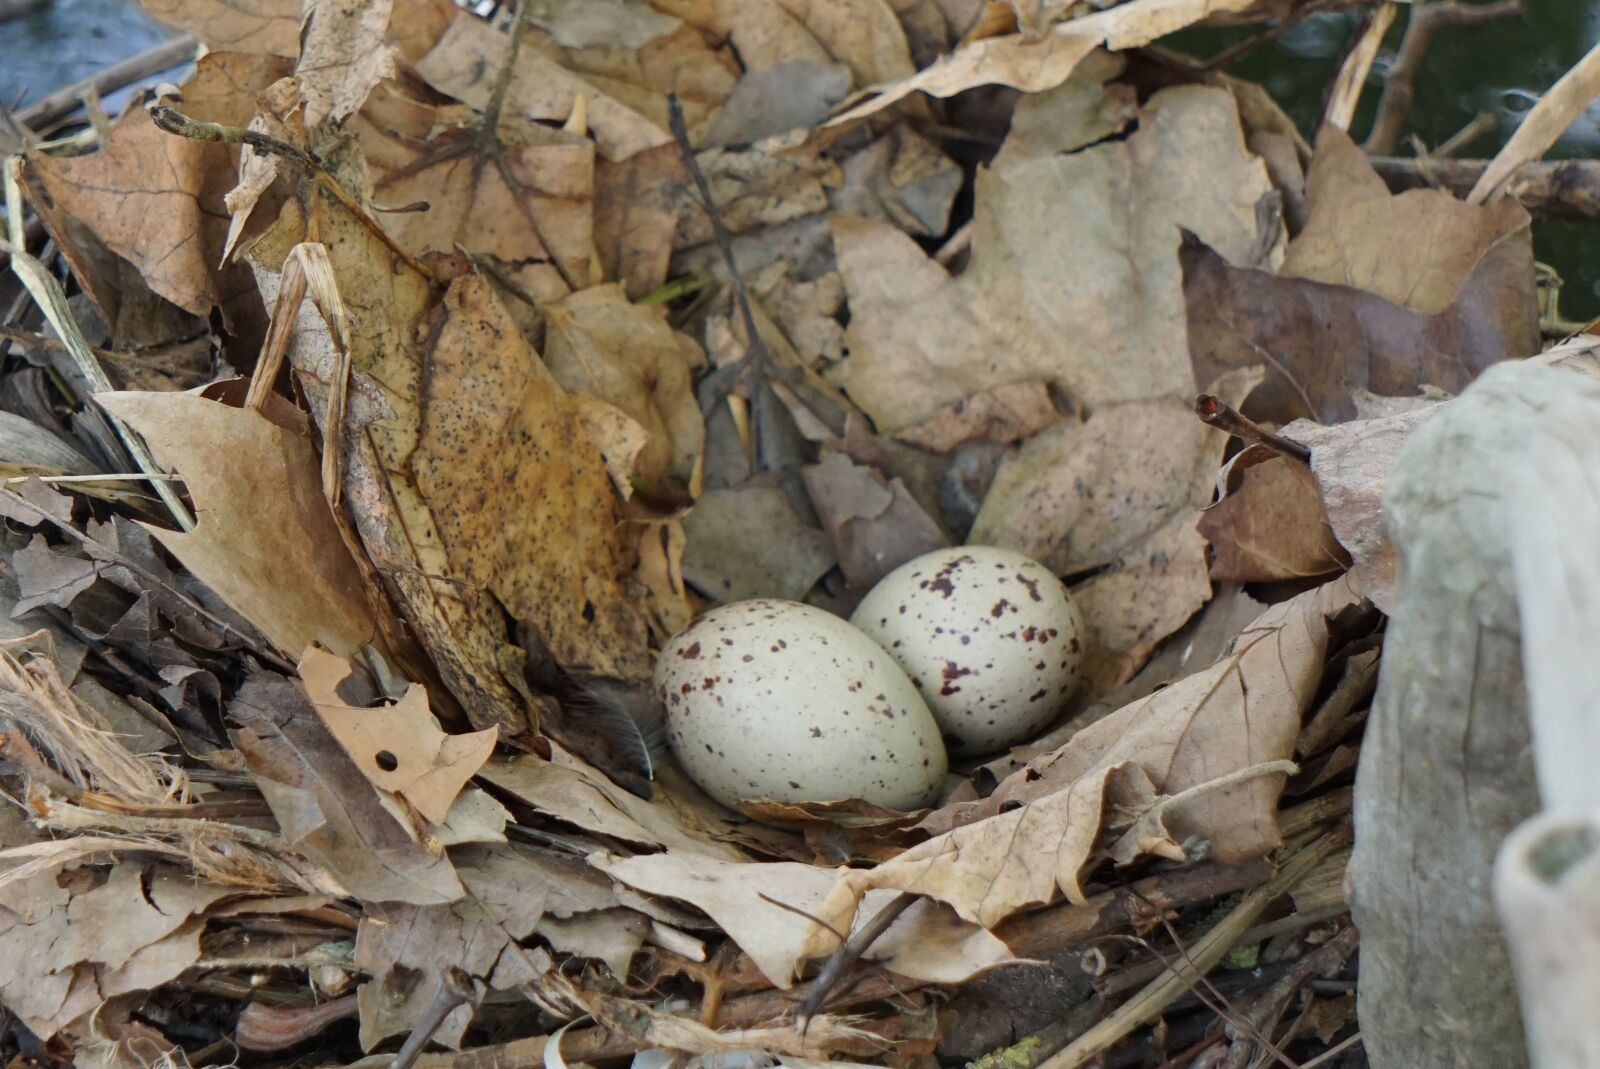 Sony a6000 sample photo. Nest, bird's nest, egg photography